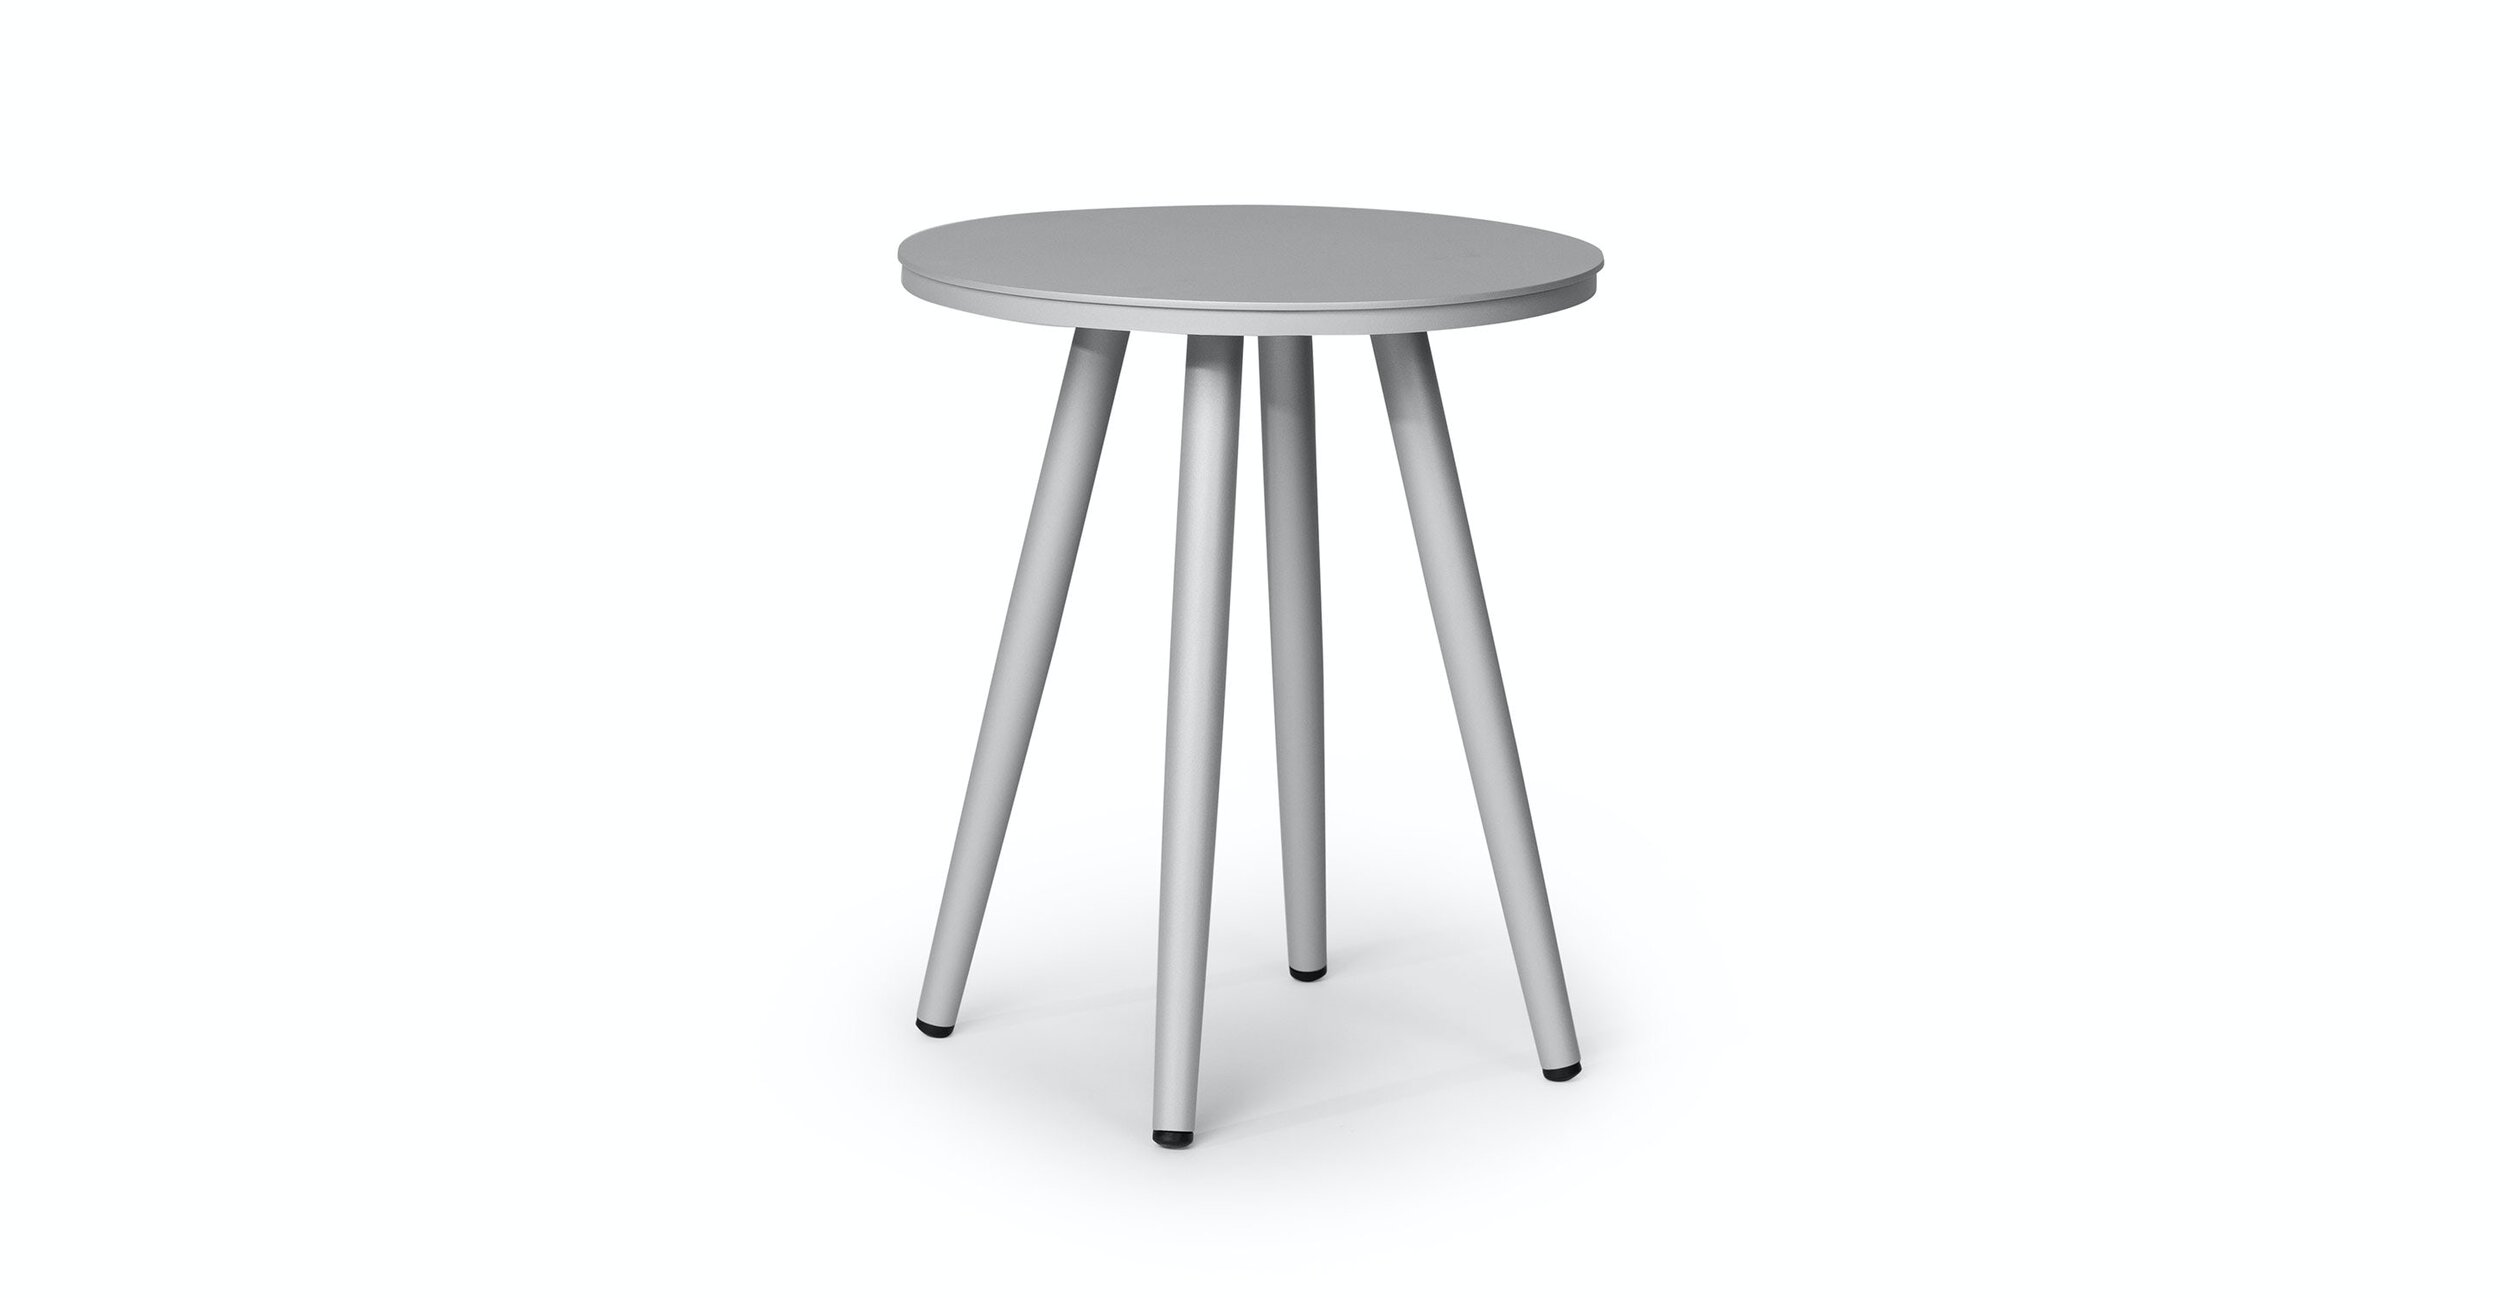 Halden Side Table 16” in Light Gray